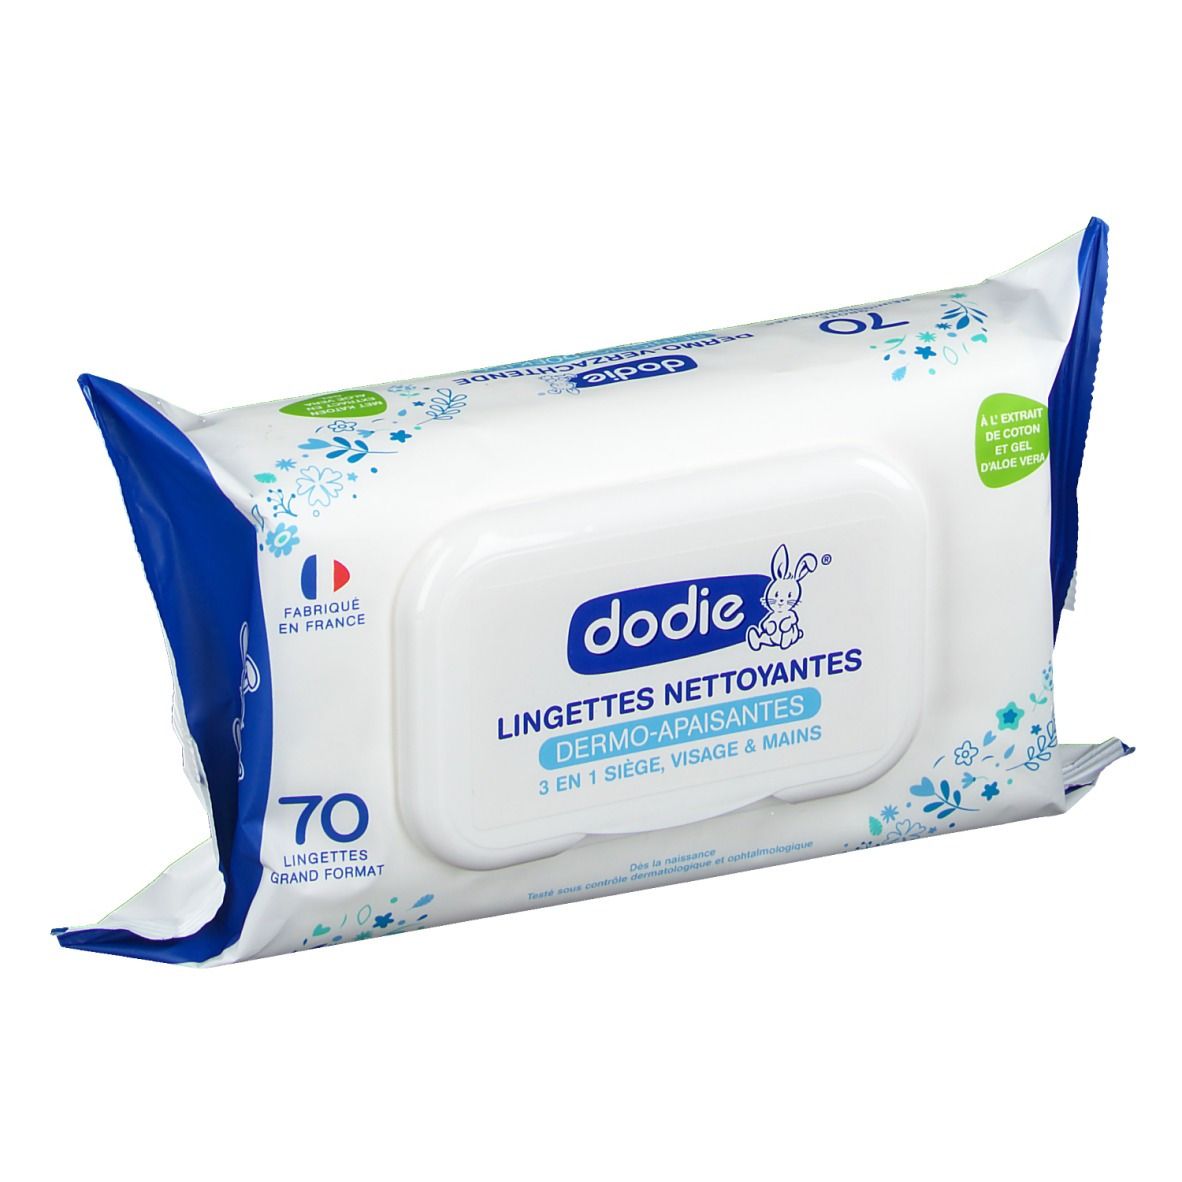 Dodie® Lingettes Nettoyantes Dermo-apaisantes 3 en 1